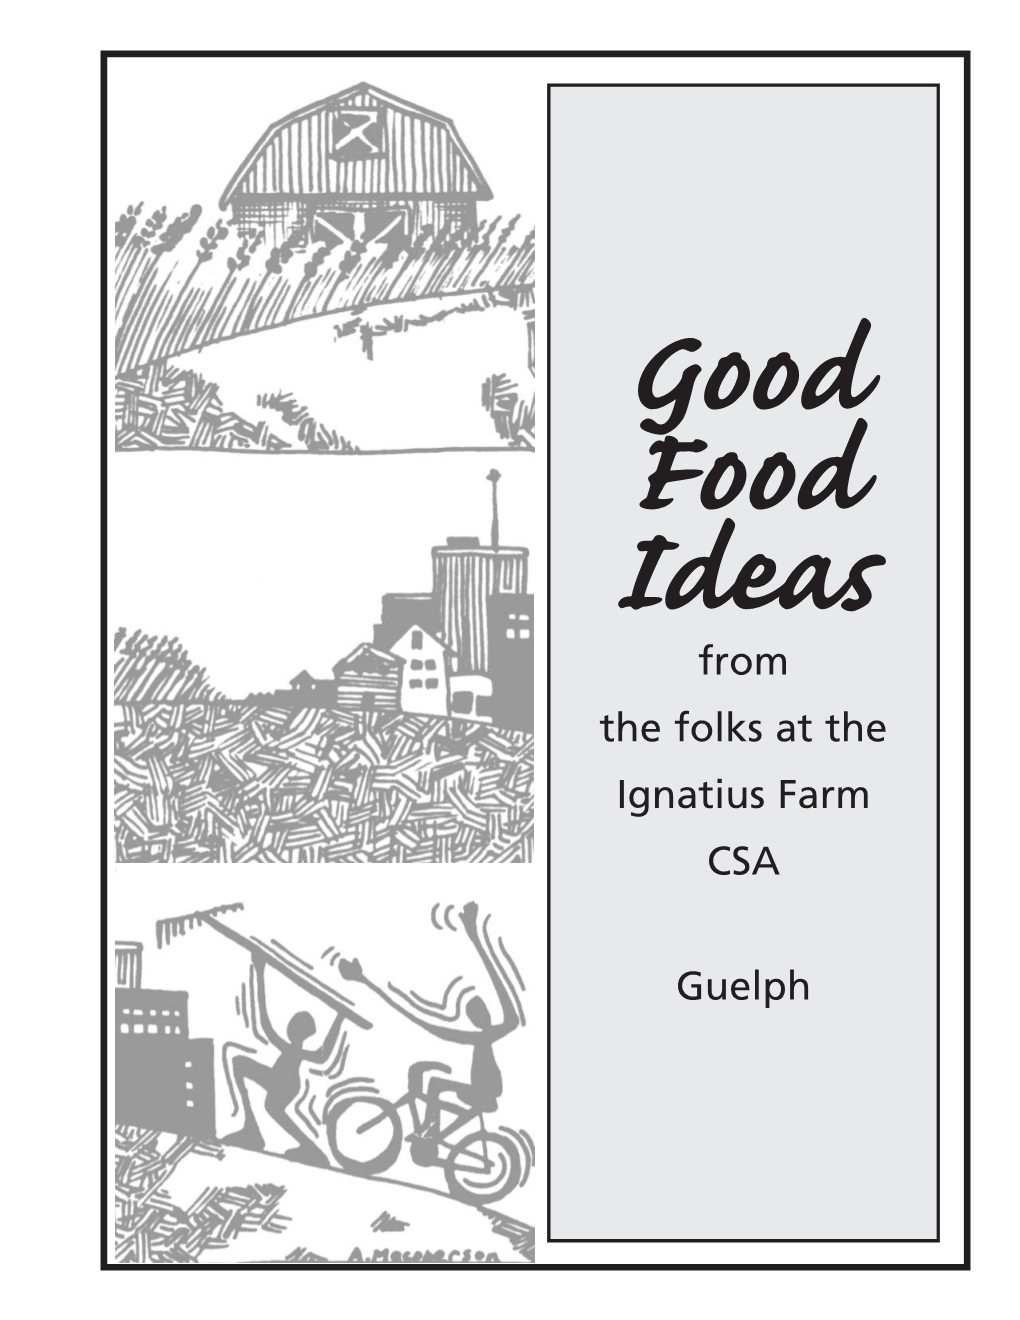 Good Food Ideas from the Folks at the Ignatius Farm CSA